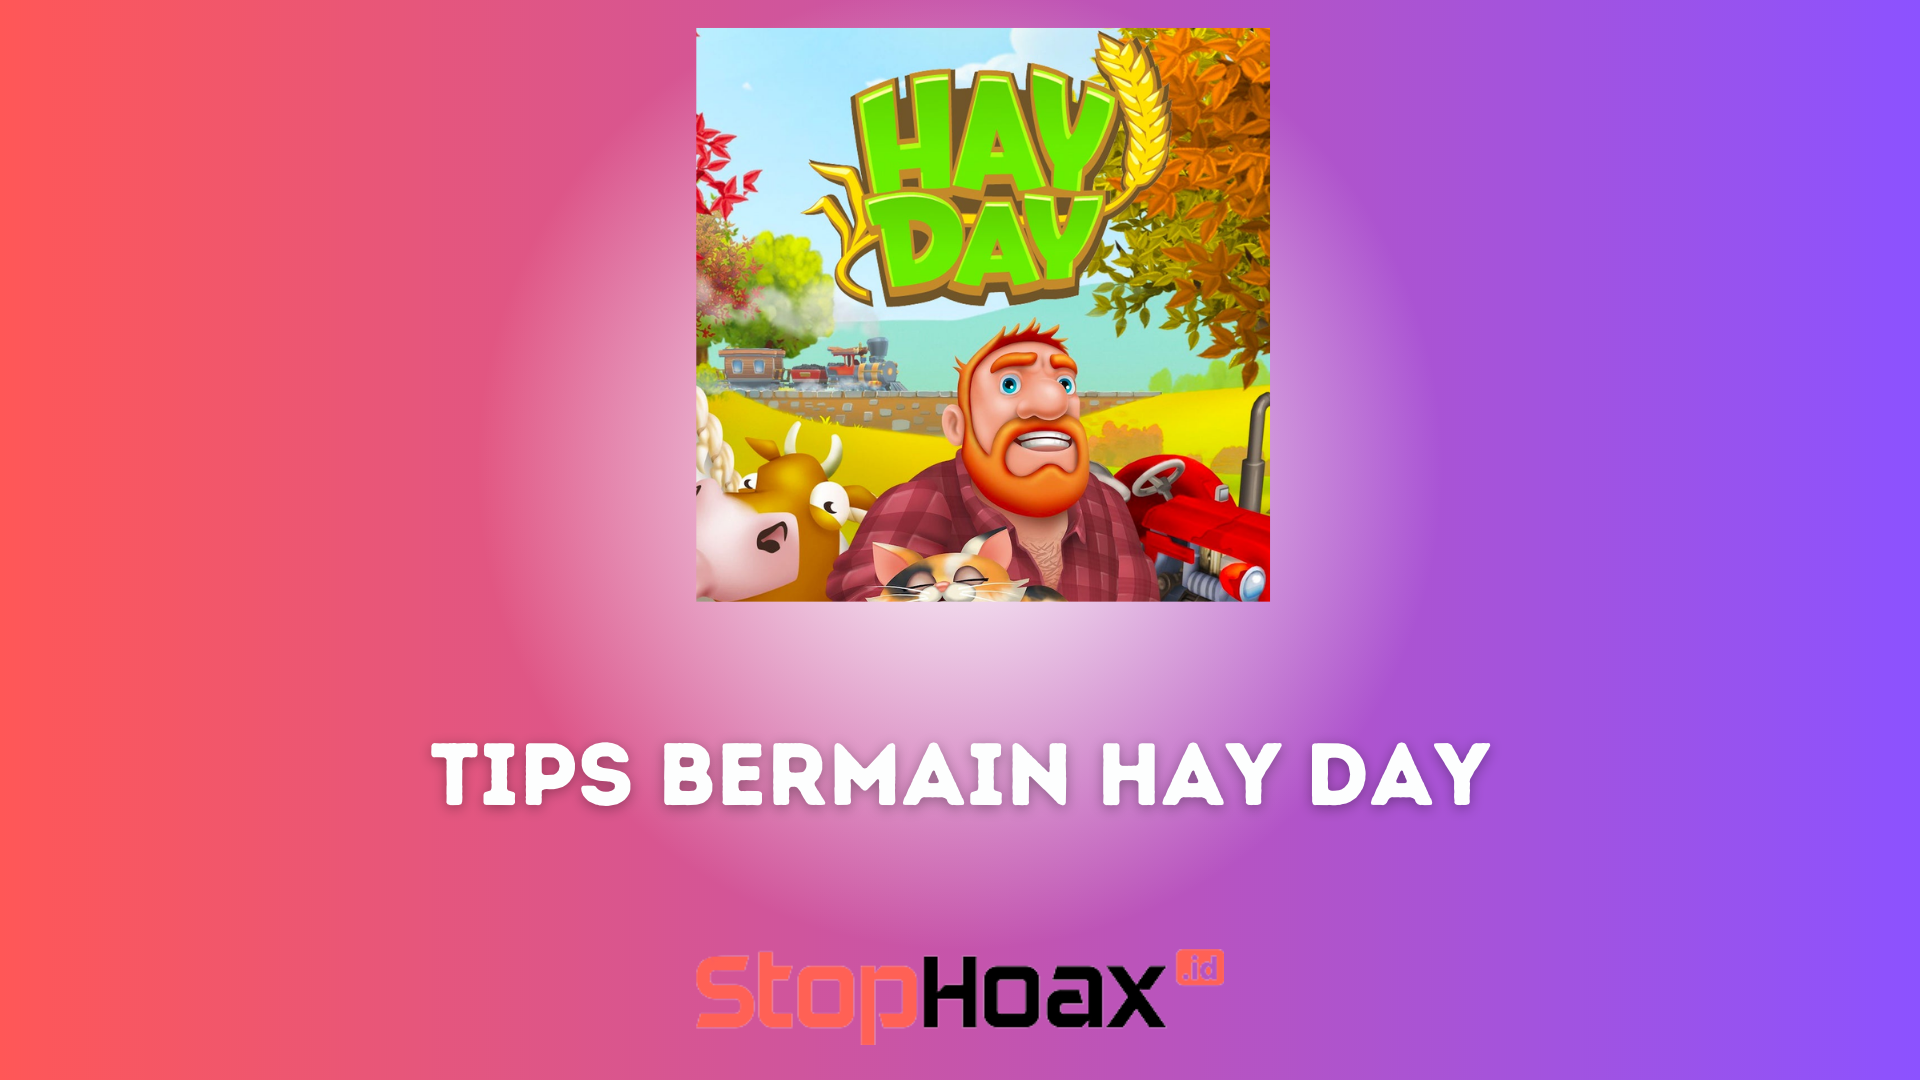 Tips Bermain Hay Day Agar Cepat Kaya di Android dan iOS Secara Mudah